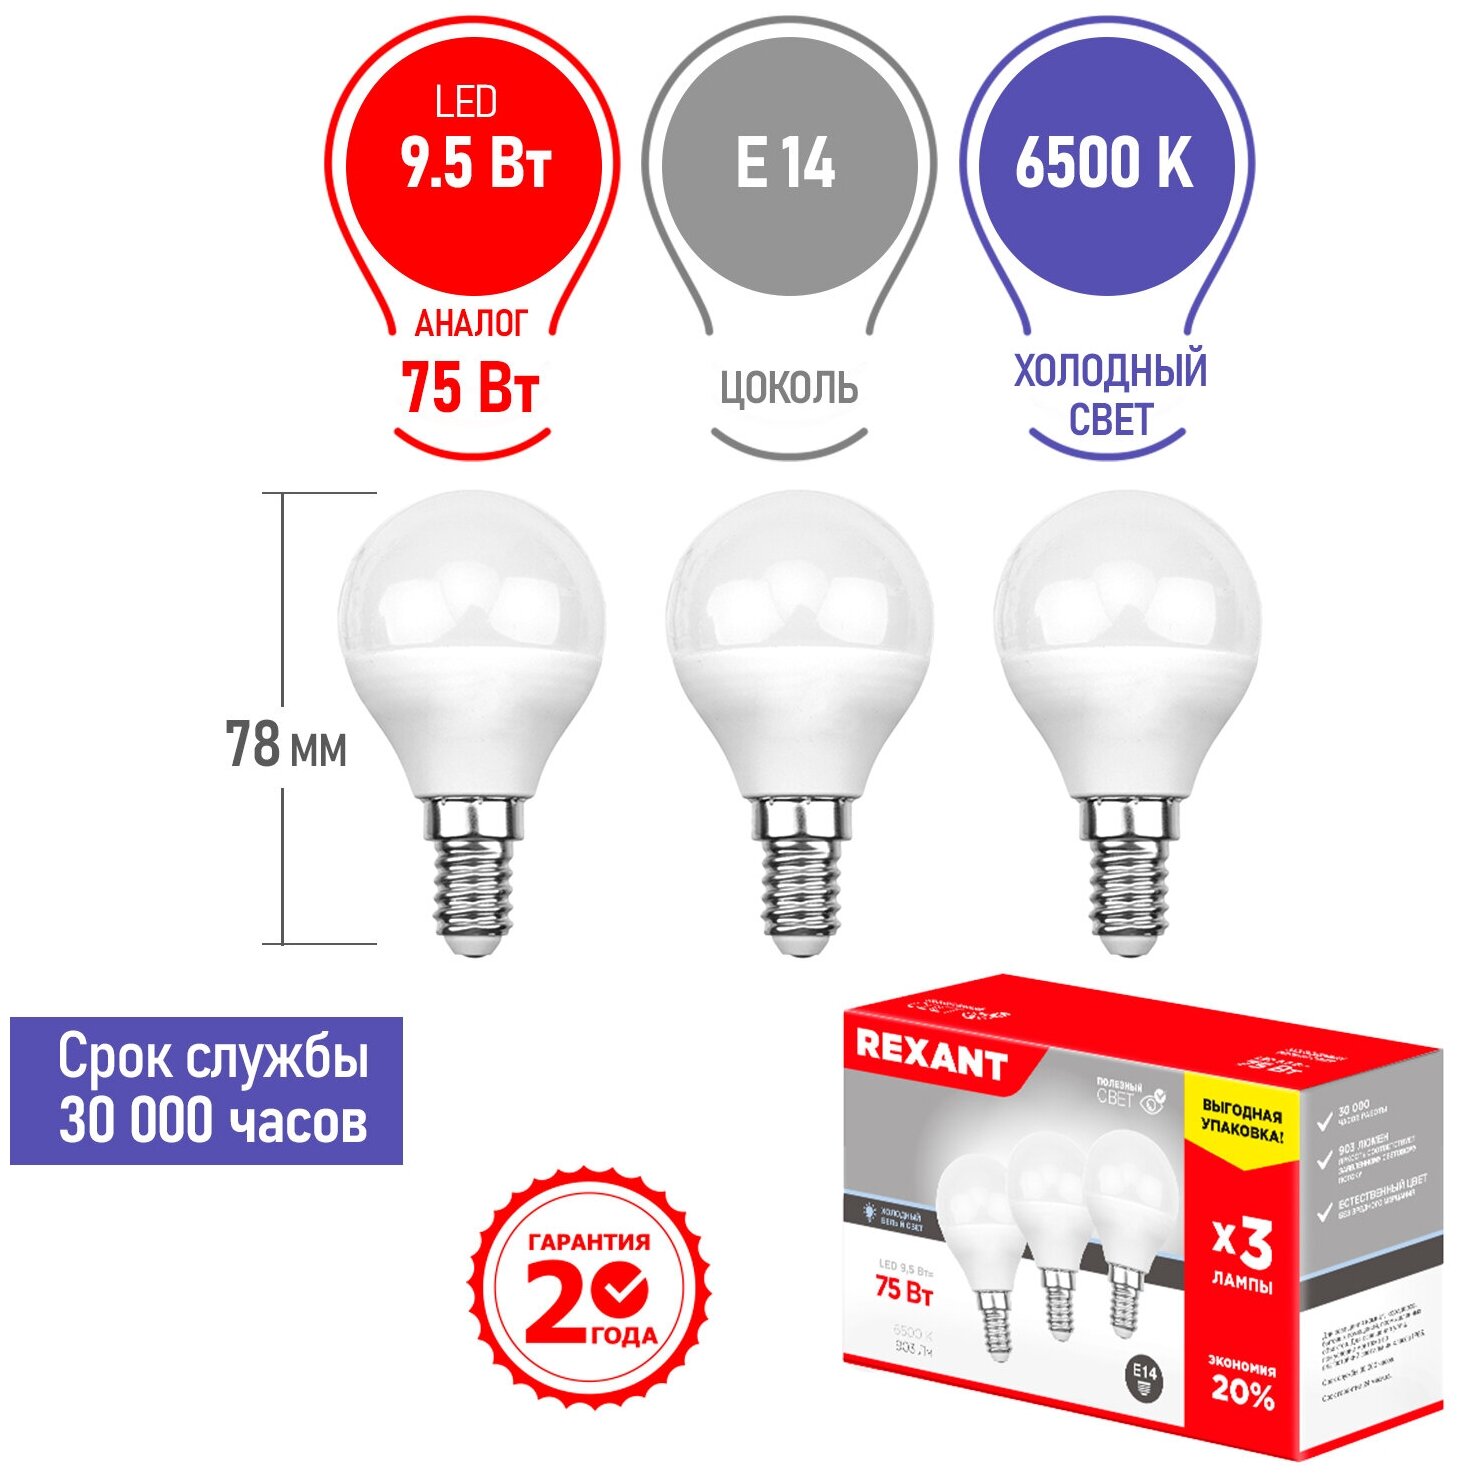 Лампа светодиодная REXANT Шарик (GL) 9.5 Вт E14 903 Лм 6500 K холодный свет (3 шт./уп.)